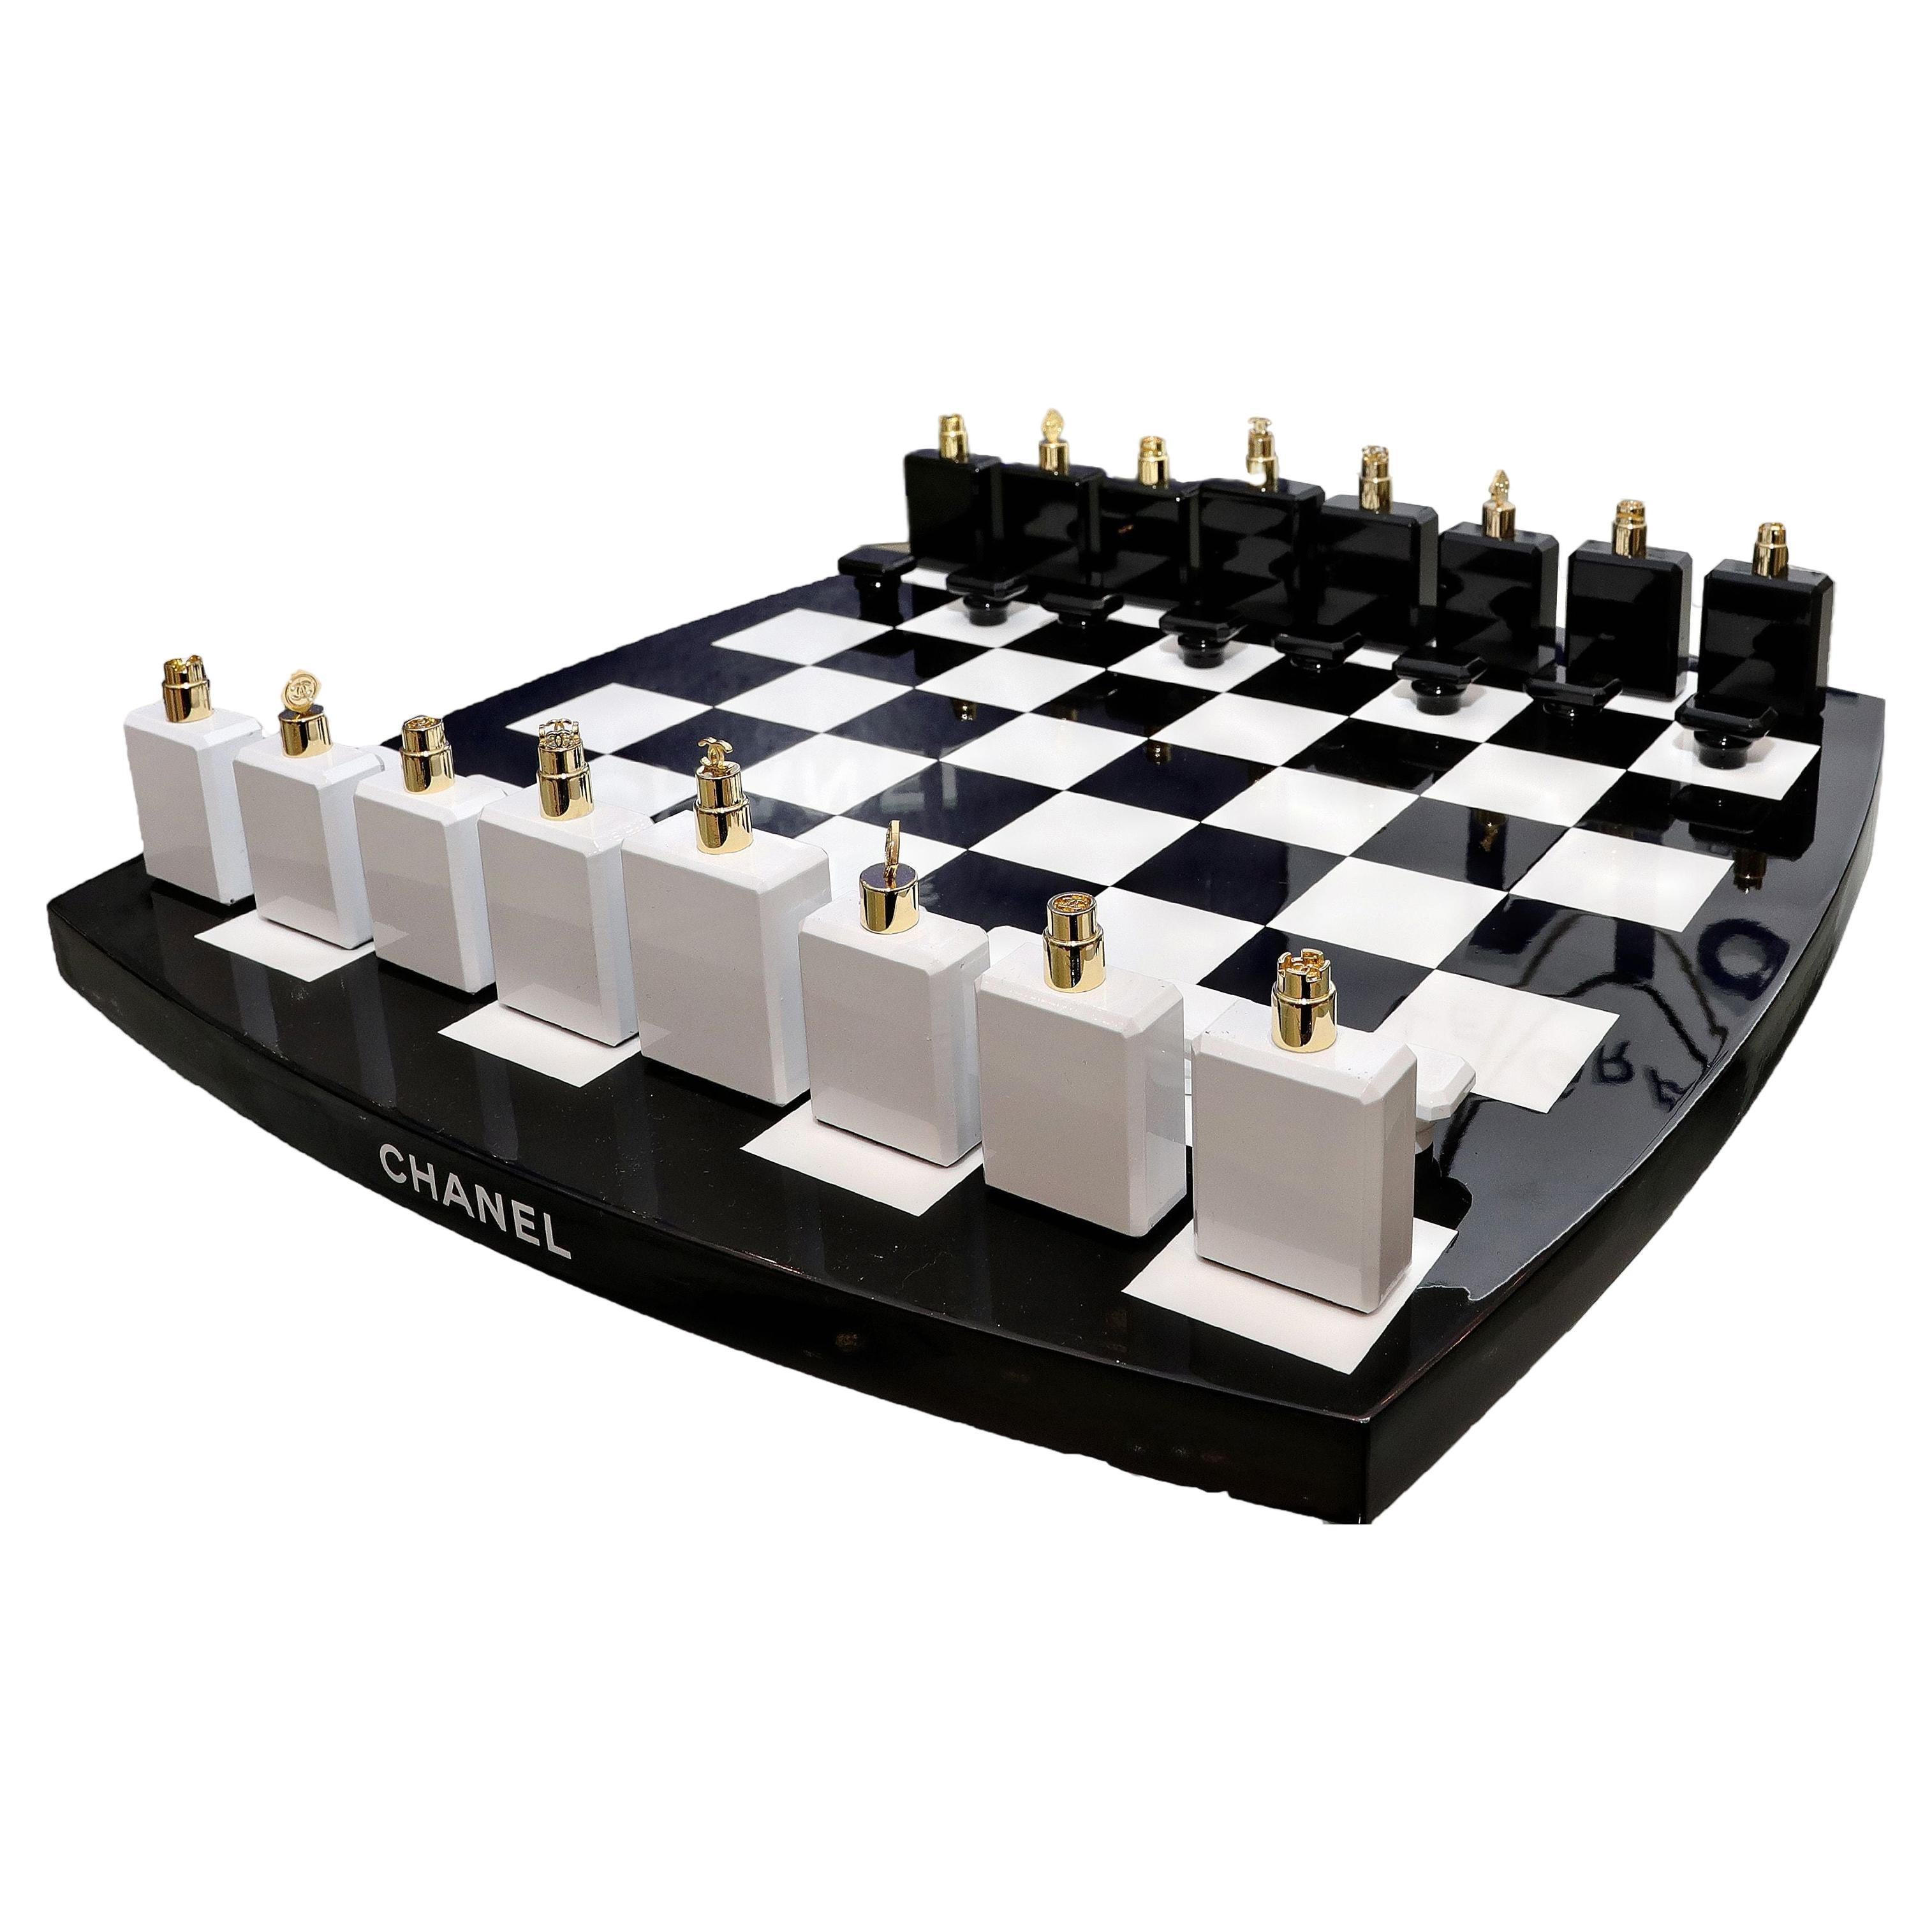 Ensemble d'échecs Chanel en édition limitée